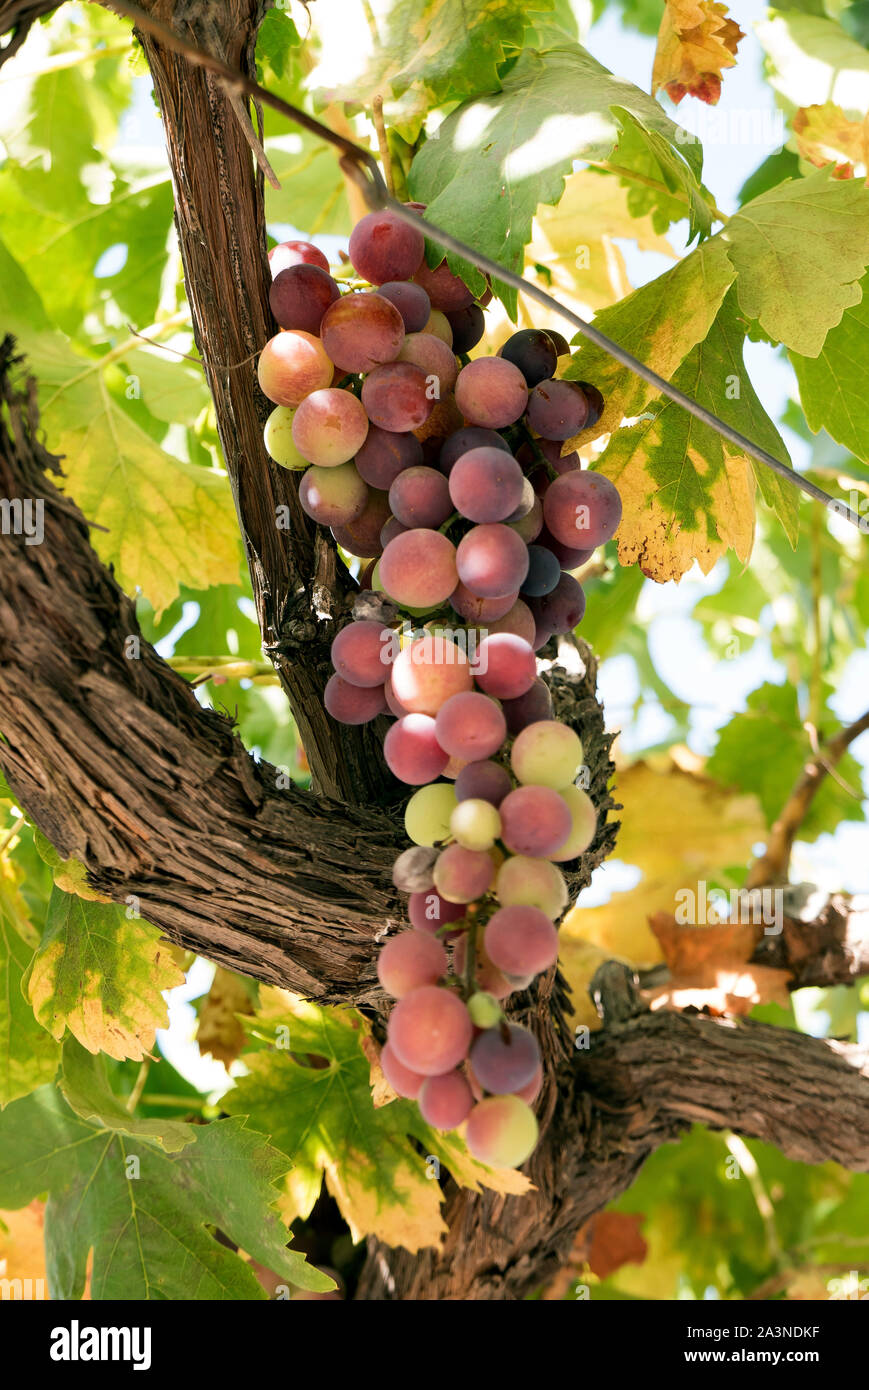 Racimo de uvas en la vid Foto de stock